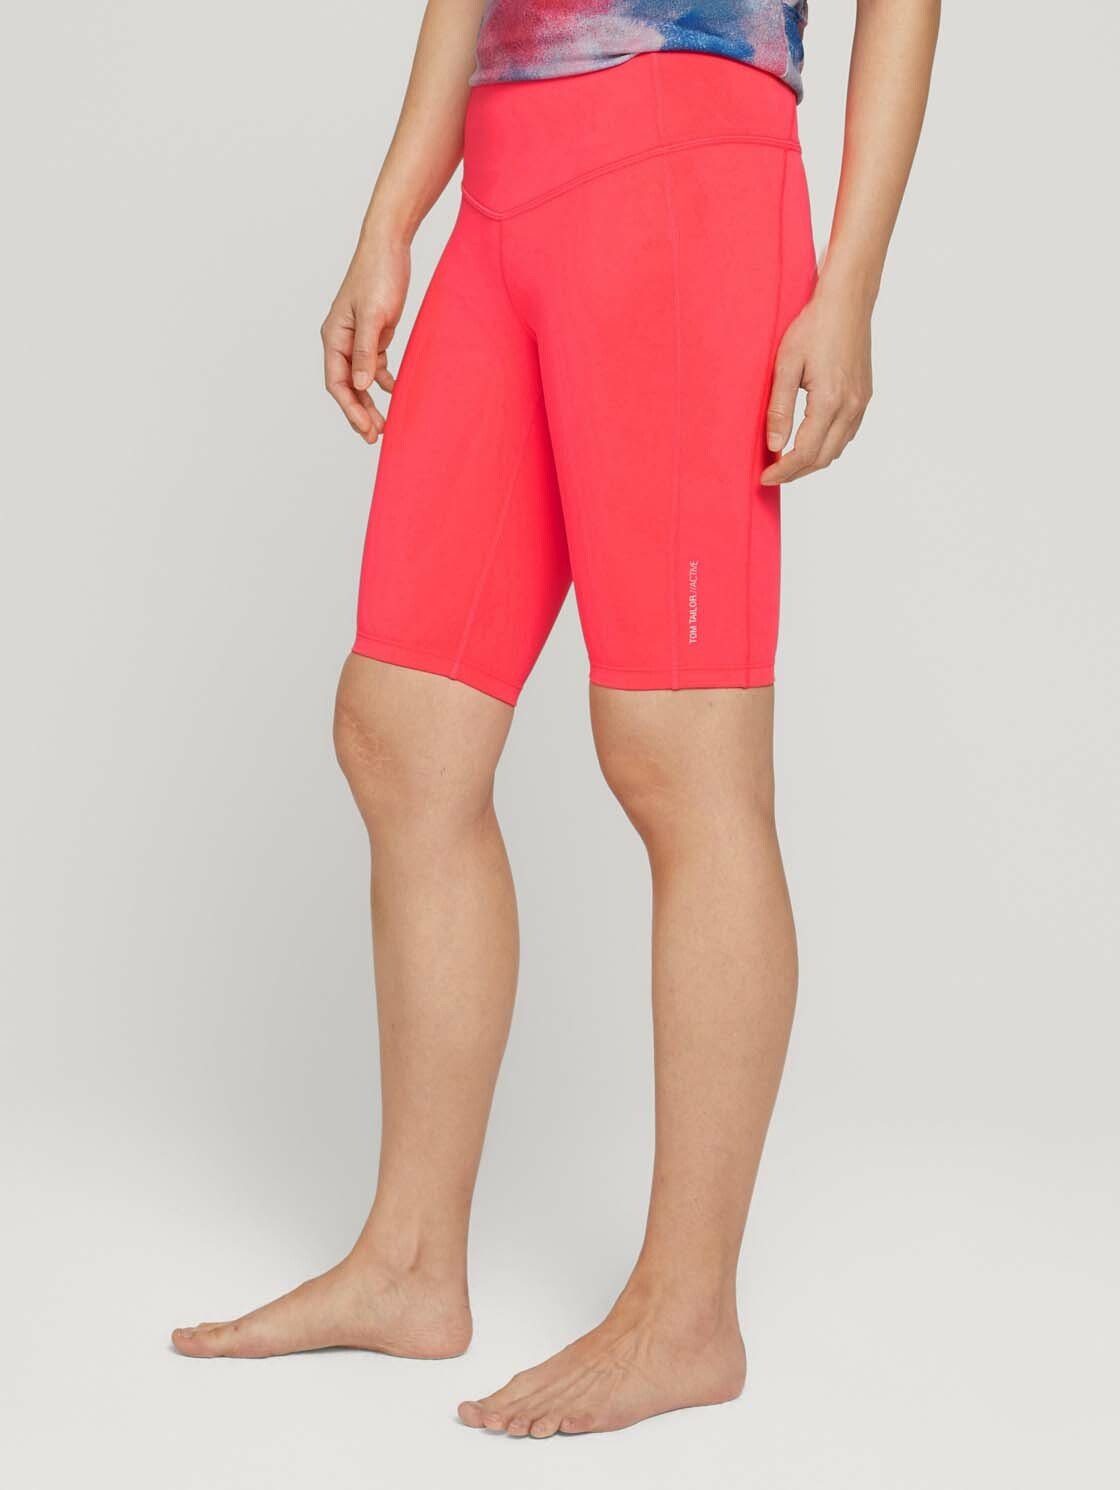 Sporthose TAILOR neonpink unifarbende TOM Shorts